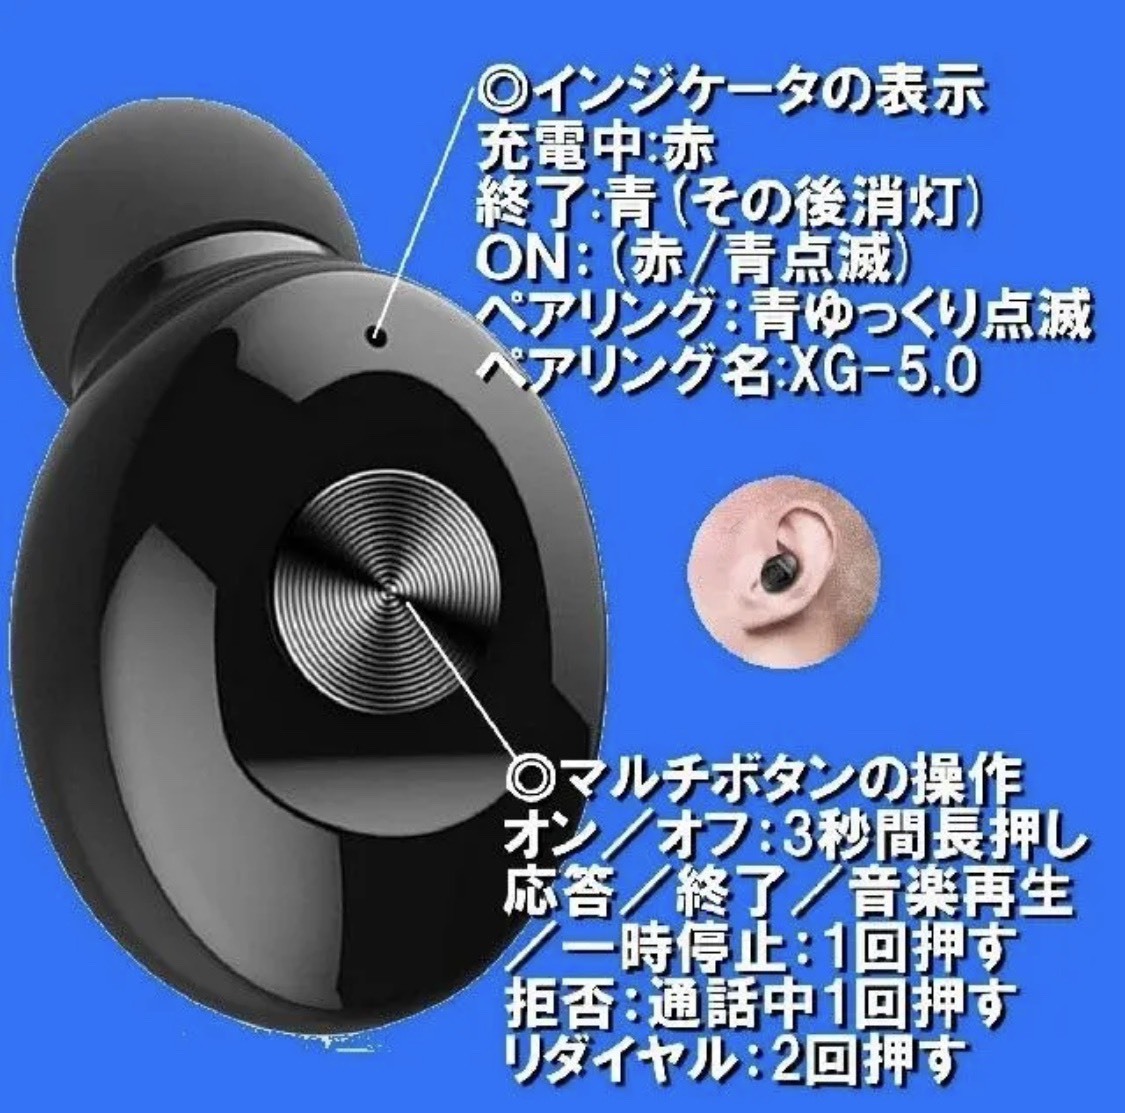 XG-12 ワイヤレスイヤホン 人気 黒 ラジオ 新発売 音楽 大特価 話題 通販